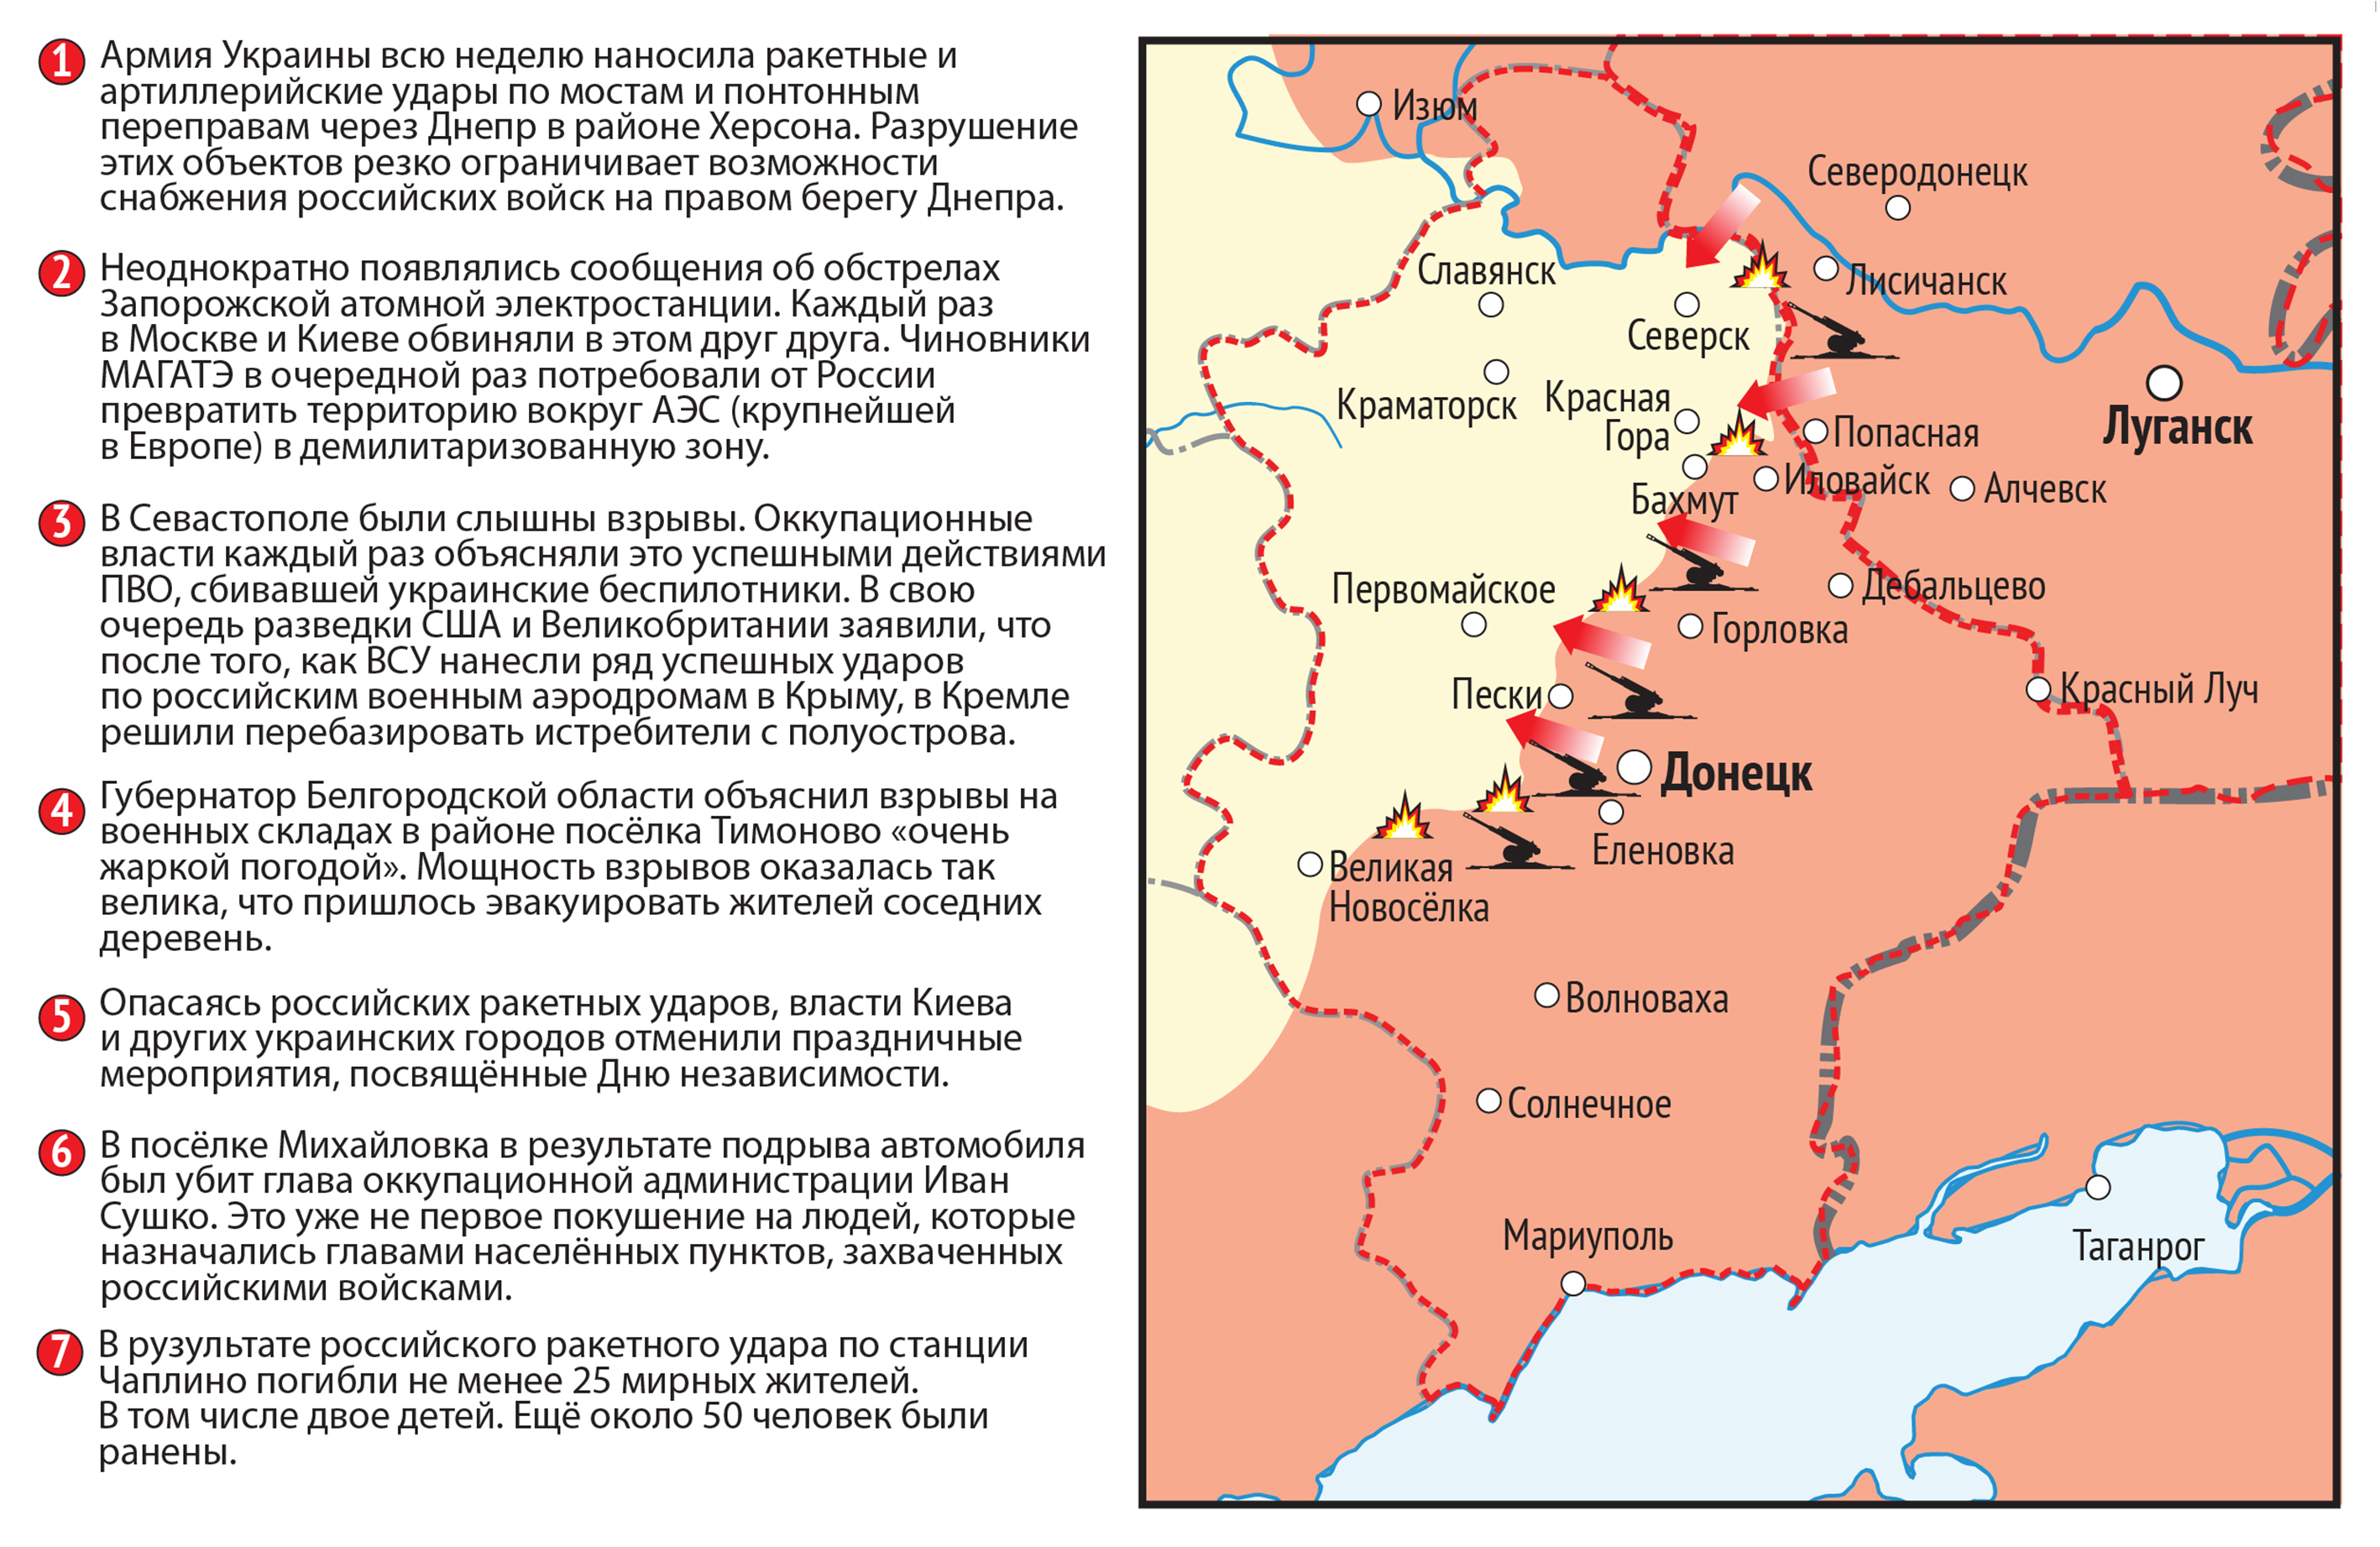 Карта значимых событий войны на Донецко-Луганском участке фронта 22-28 августа.